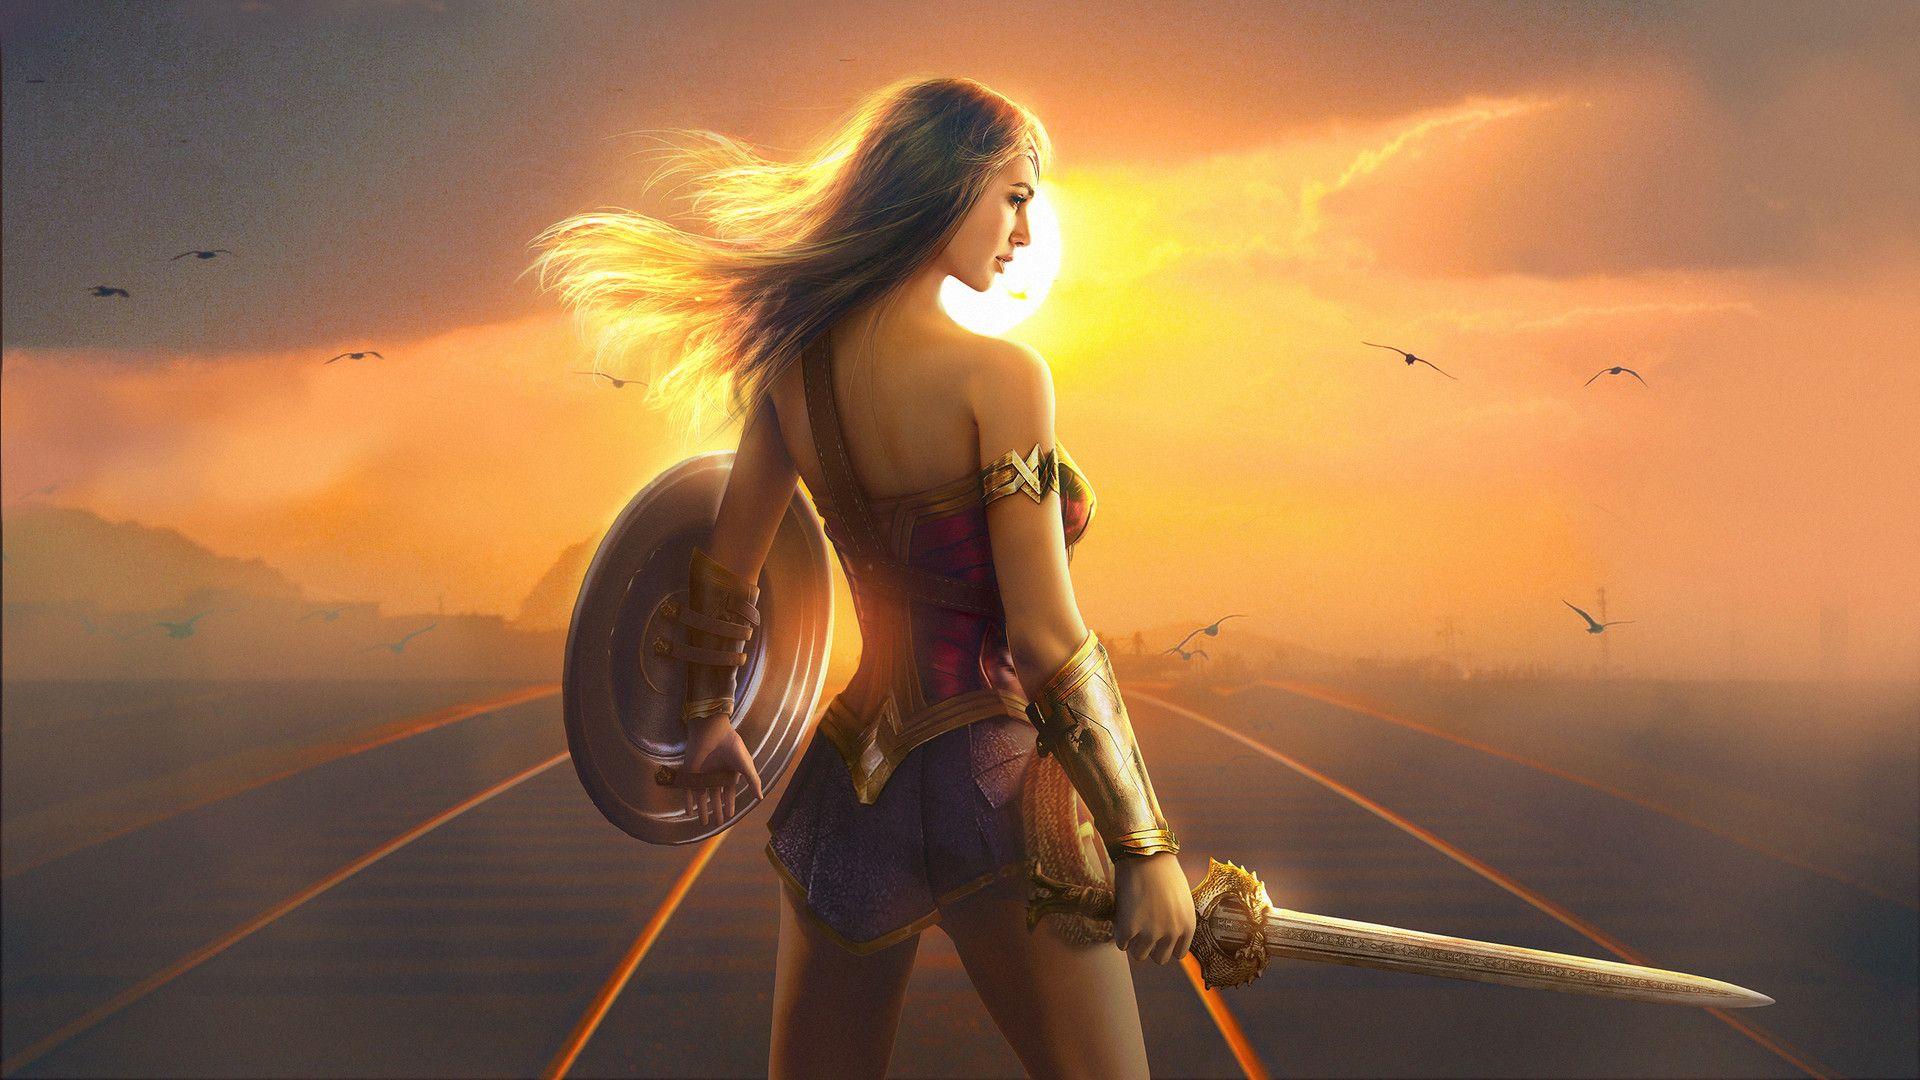 Wonder Woman Fan Art Hd, HD Superheroes, 4k Wallpaper, Image